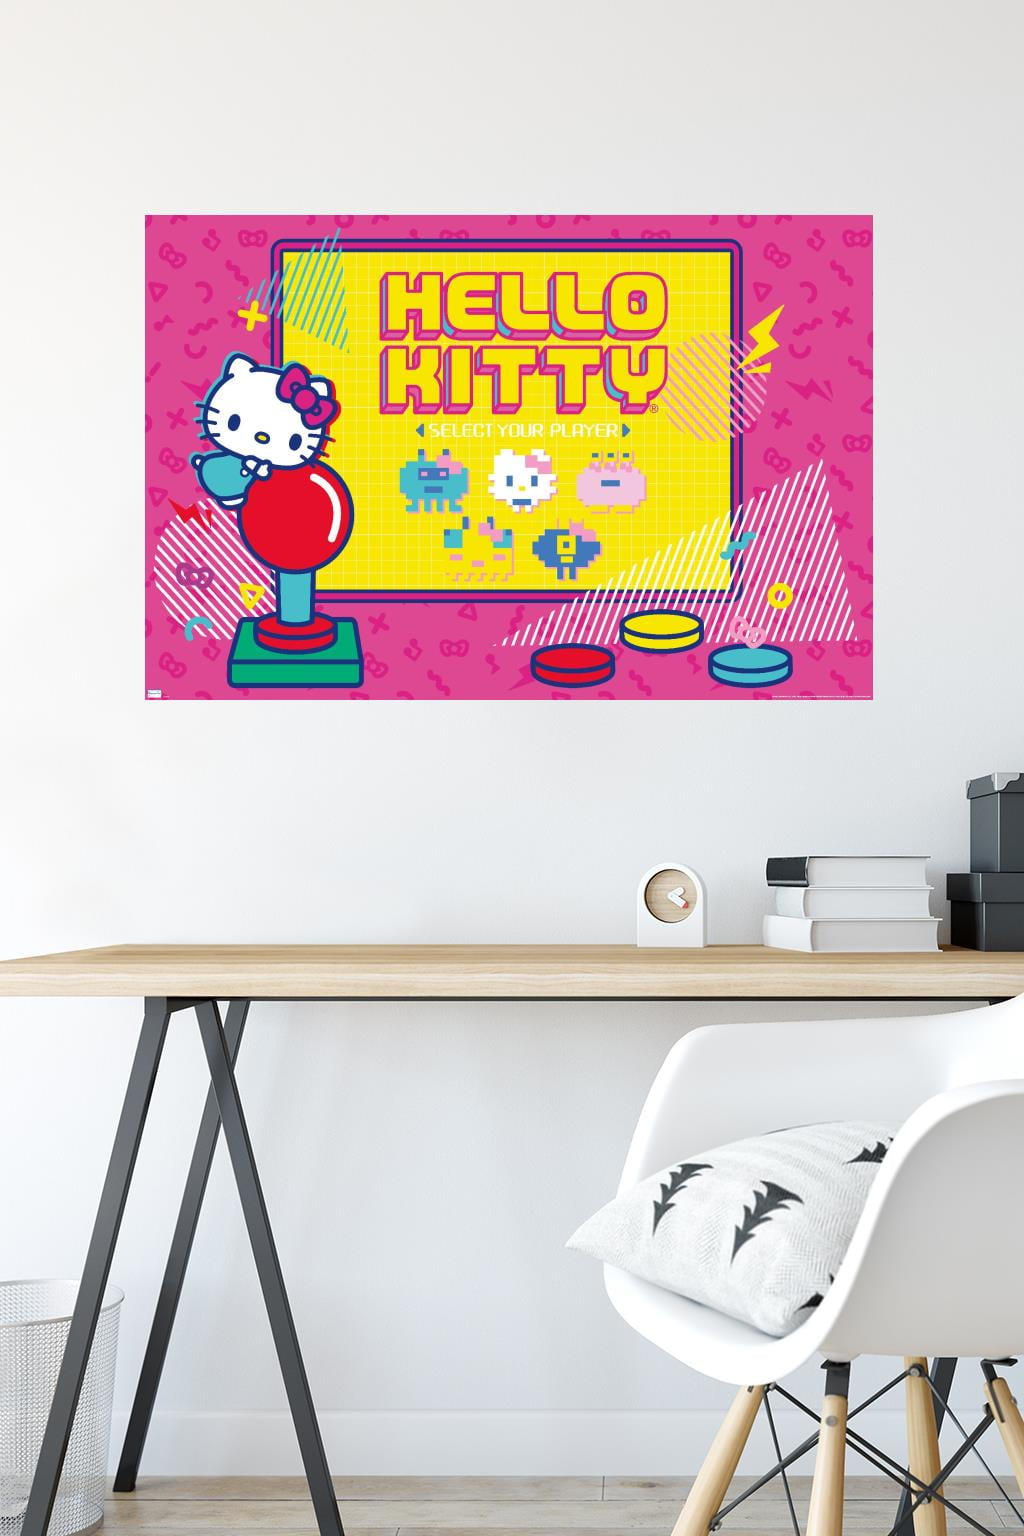  JUMANT Kawaii Poster Set for Hello Kitty Poster Wall